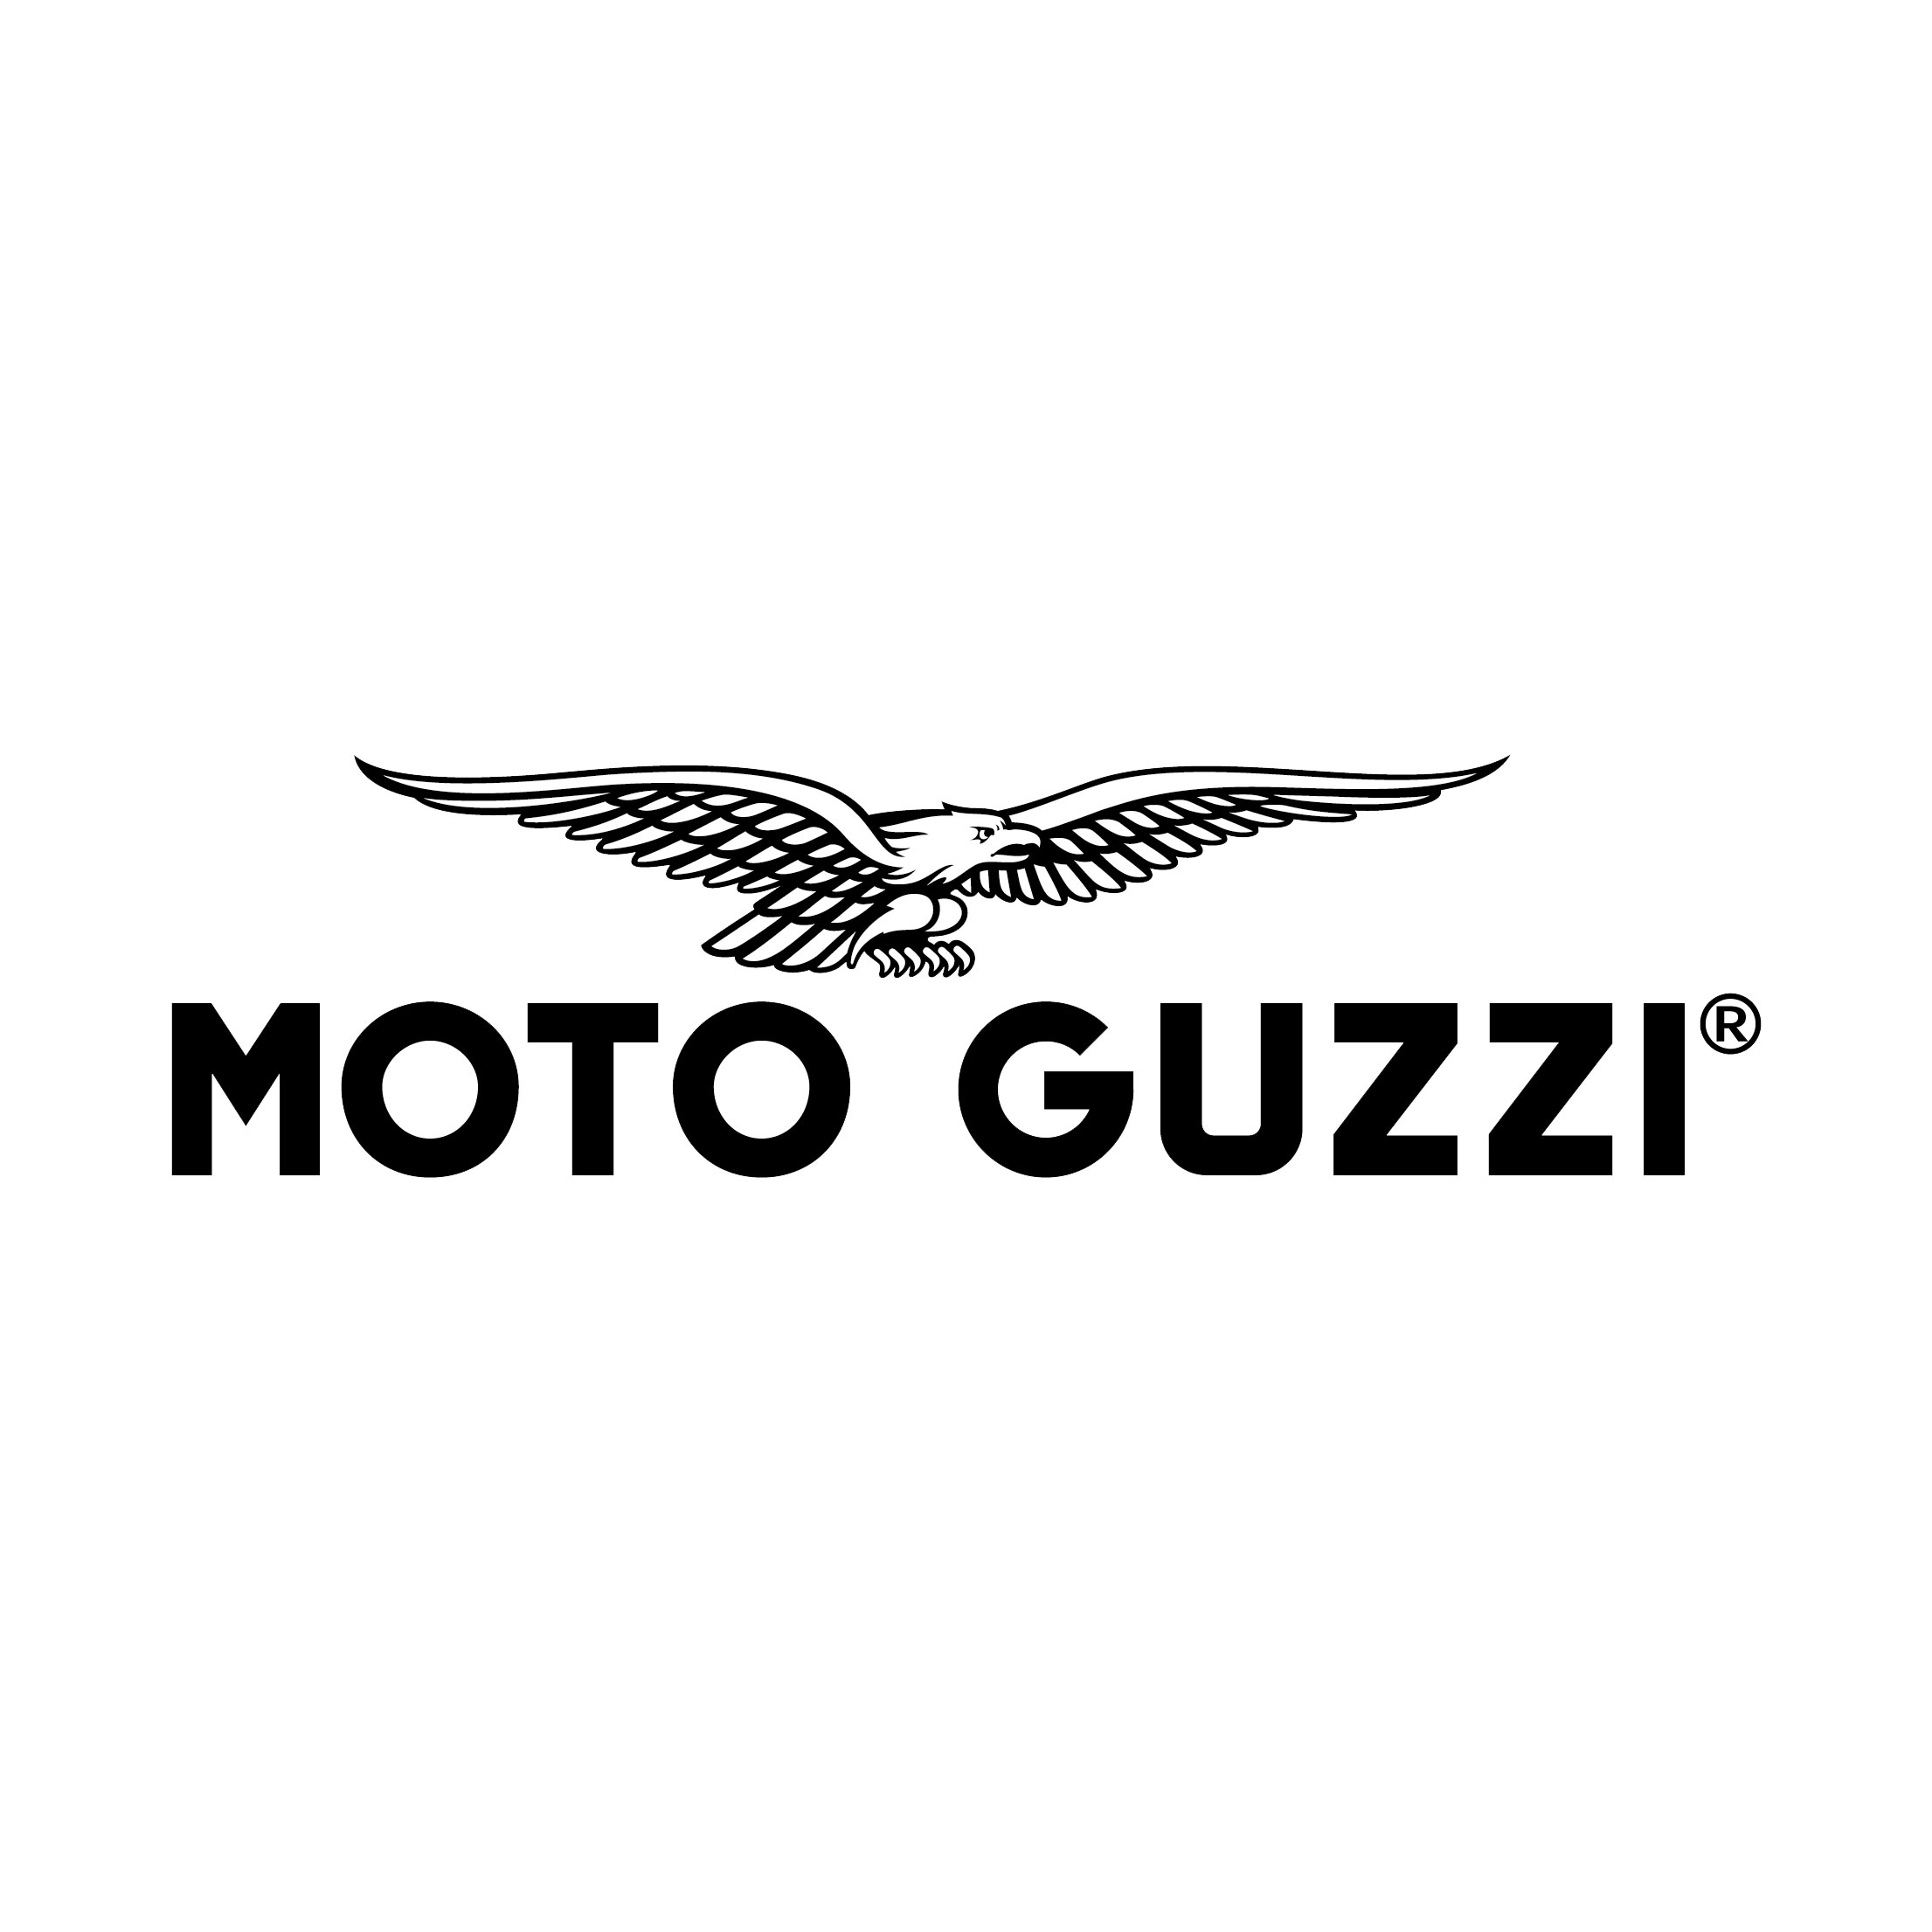 Motoguzzi logo